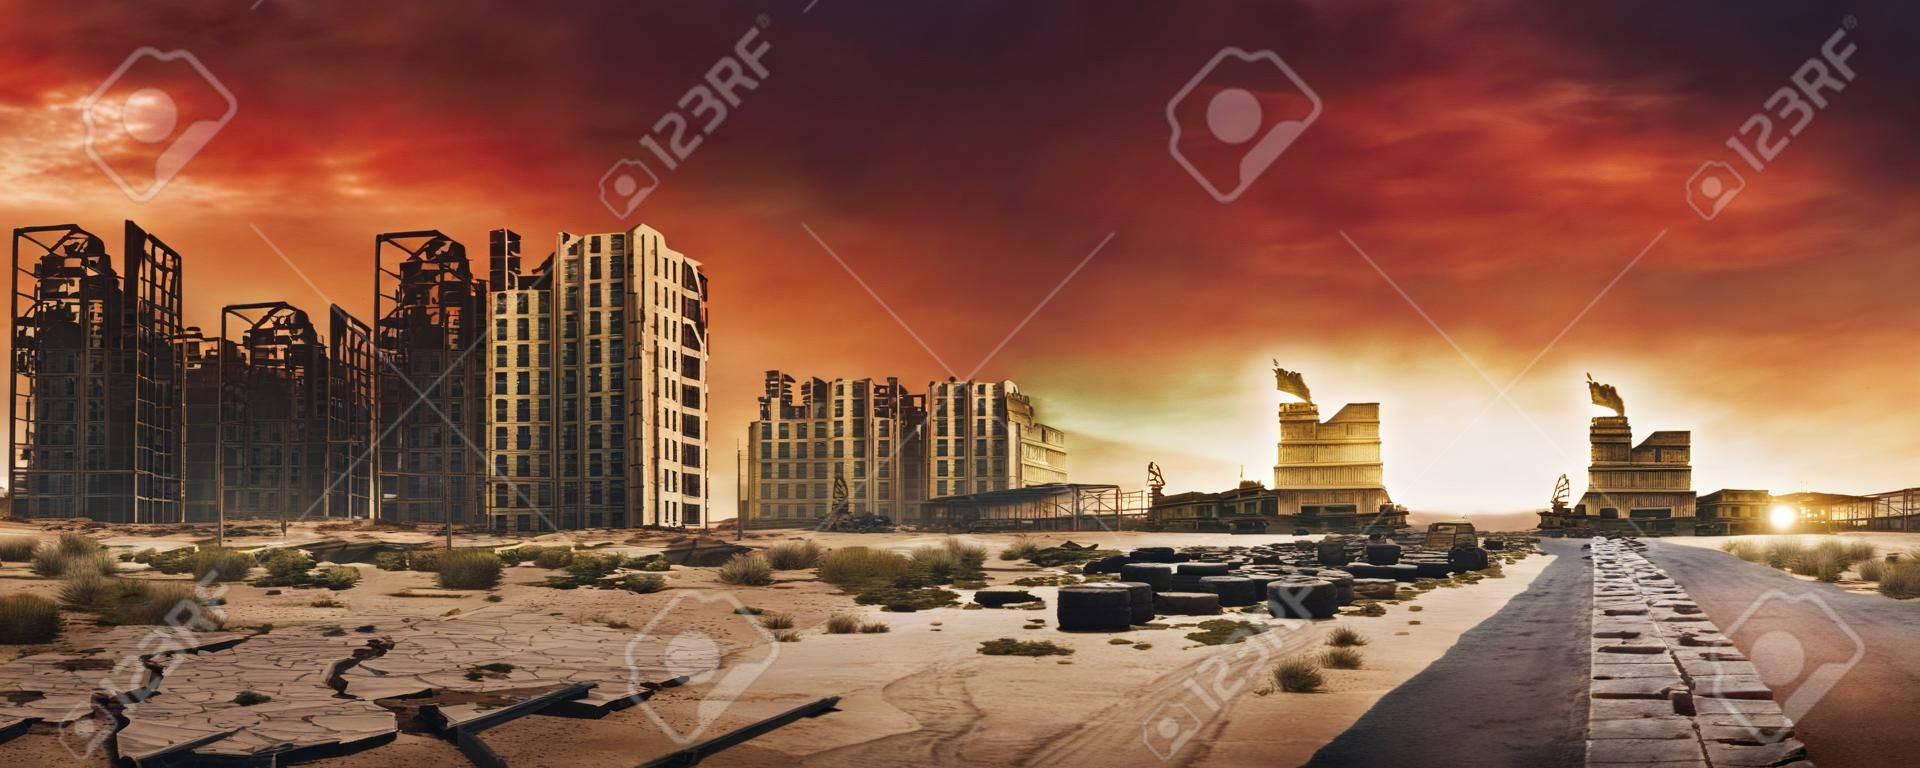 放棄され破壊された建物、ひびの入った道路と標識のある砂漠都市の荒れ地の終末論的な背景画像の夕方。